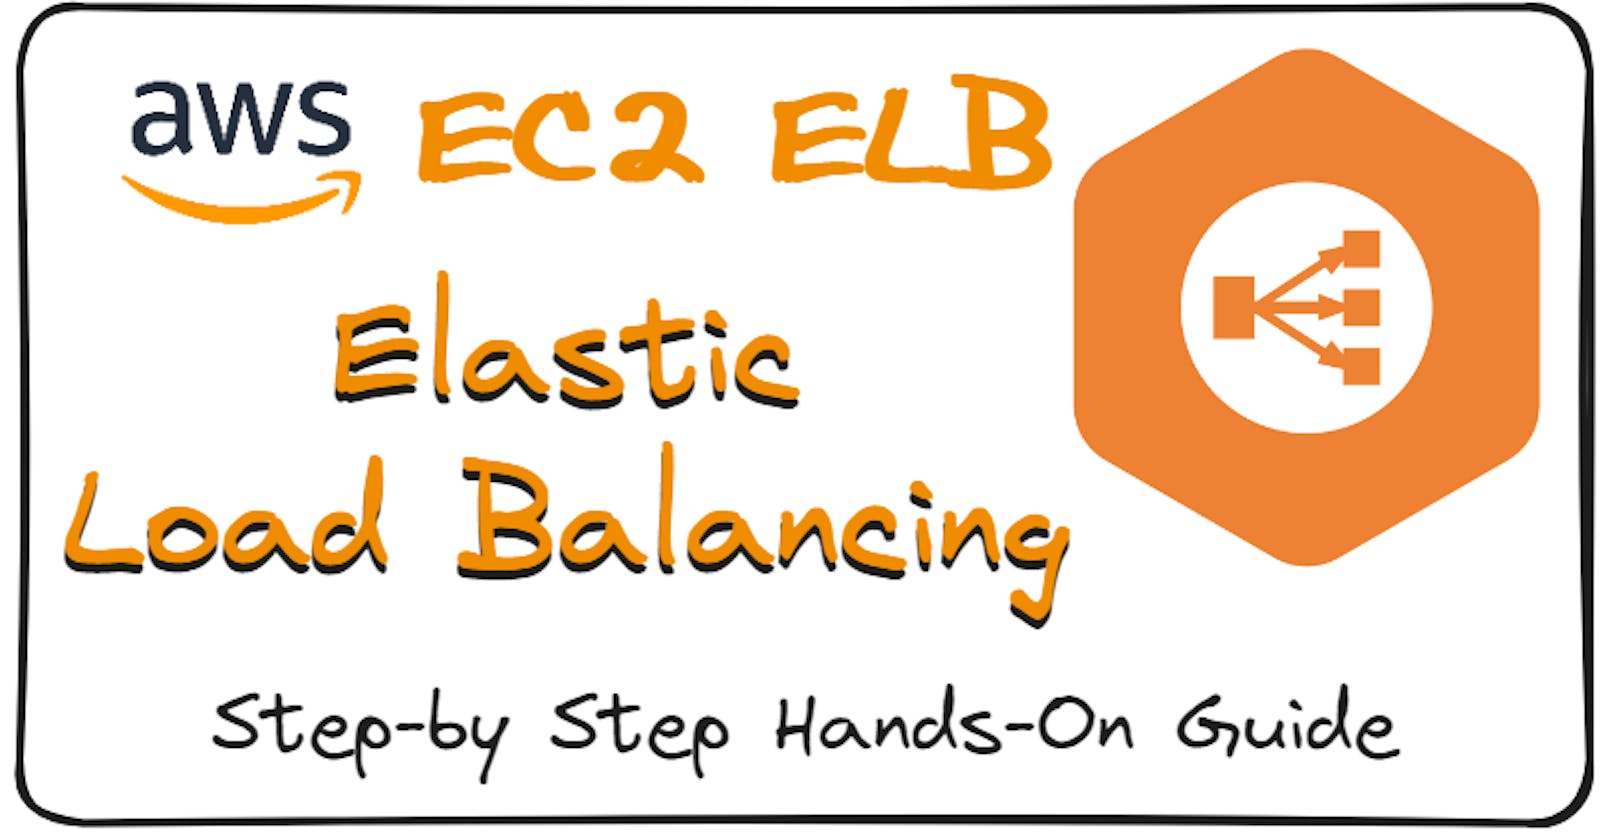 AWS EC2 ELB Elastic Load Balancing